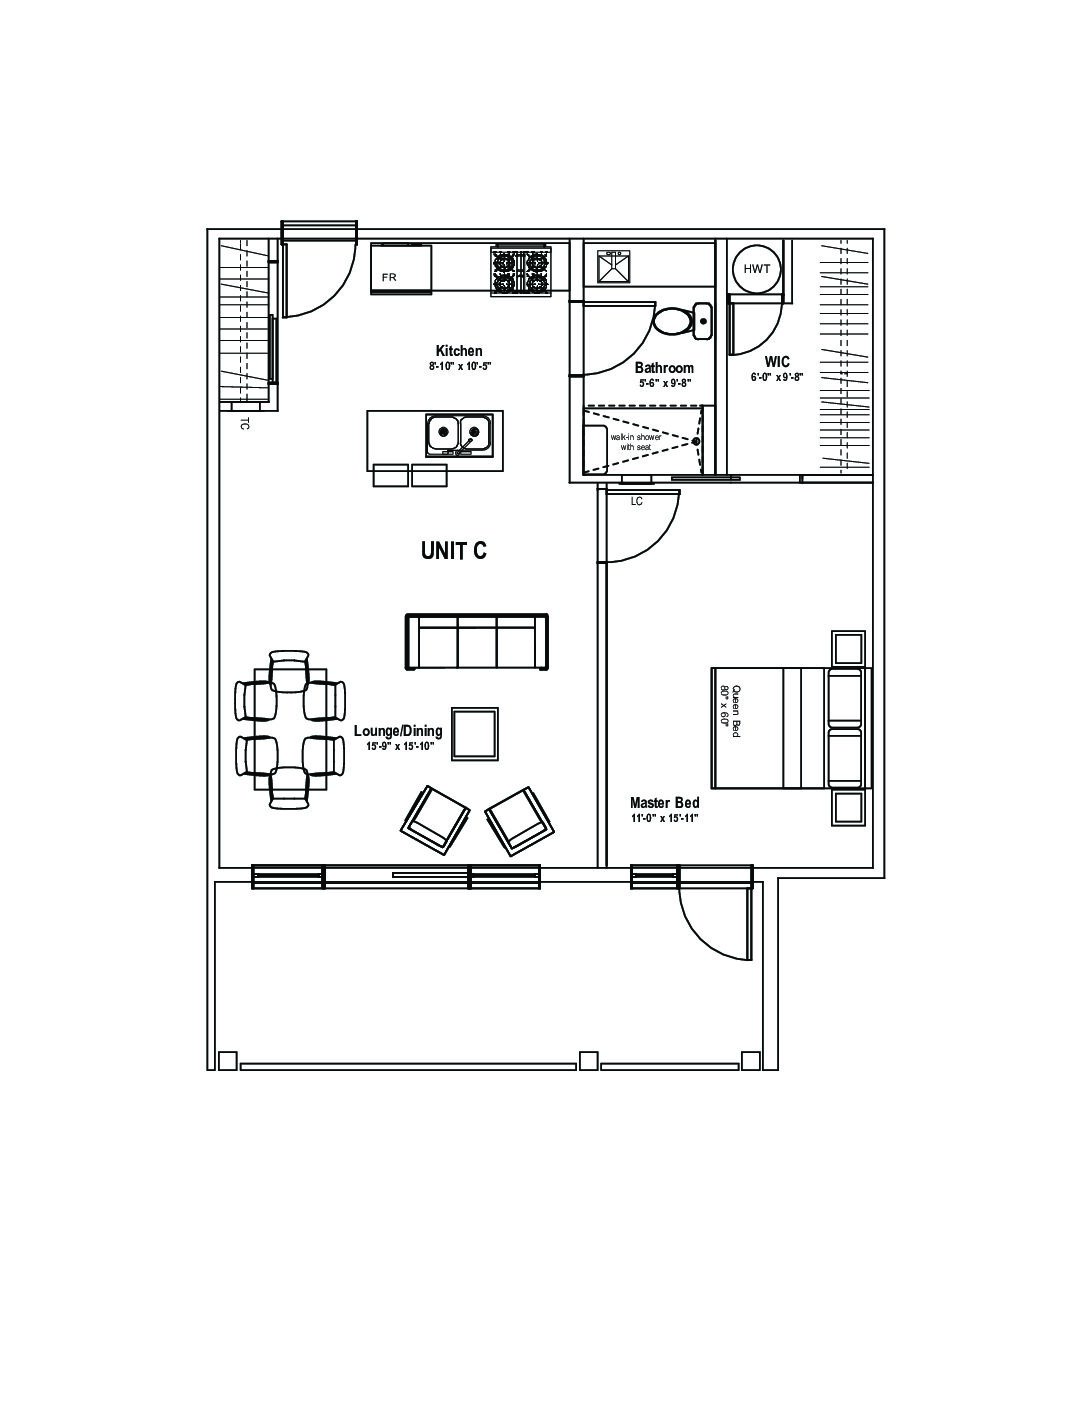 View or Print PDF of 3 Bedroom Unit D floor plan in new tab